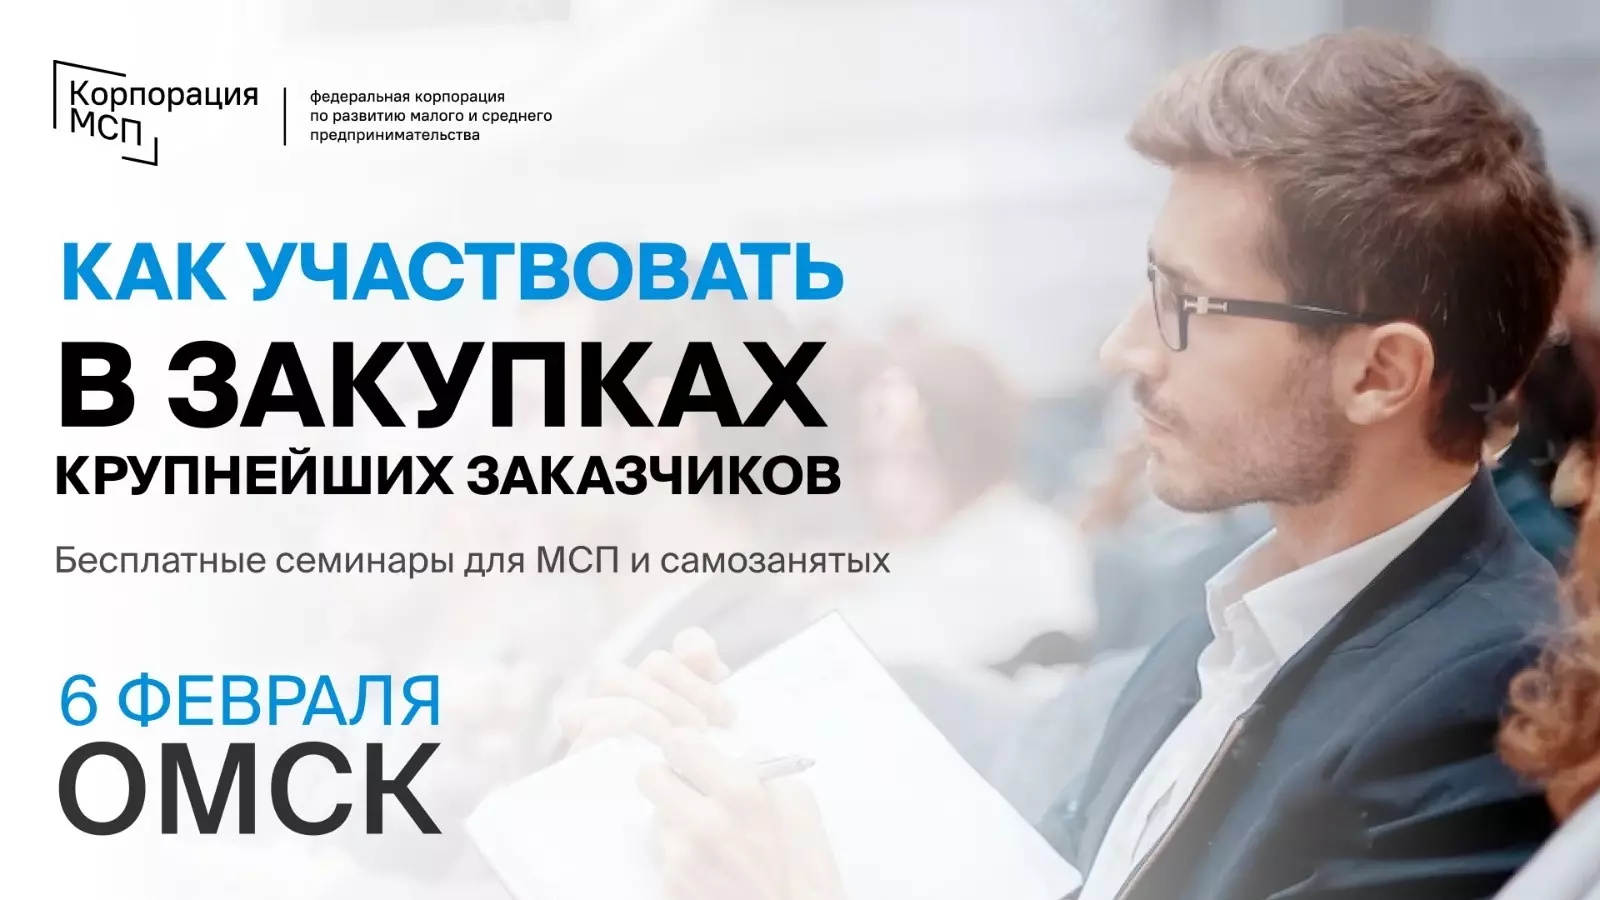 В Омске пройдет семинар о закупках для МСП и самозанятых